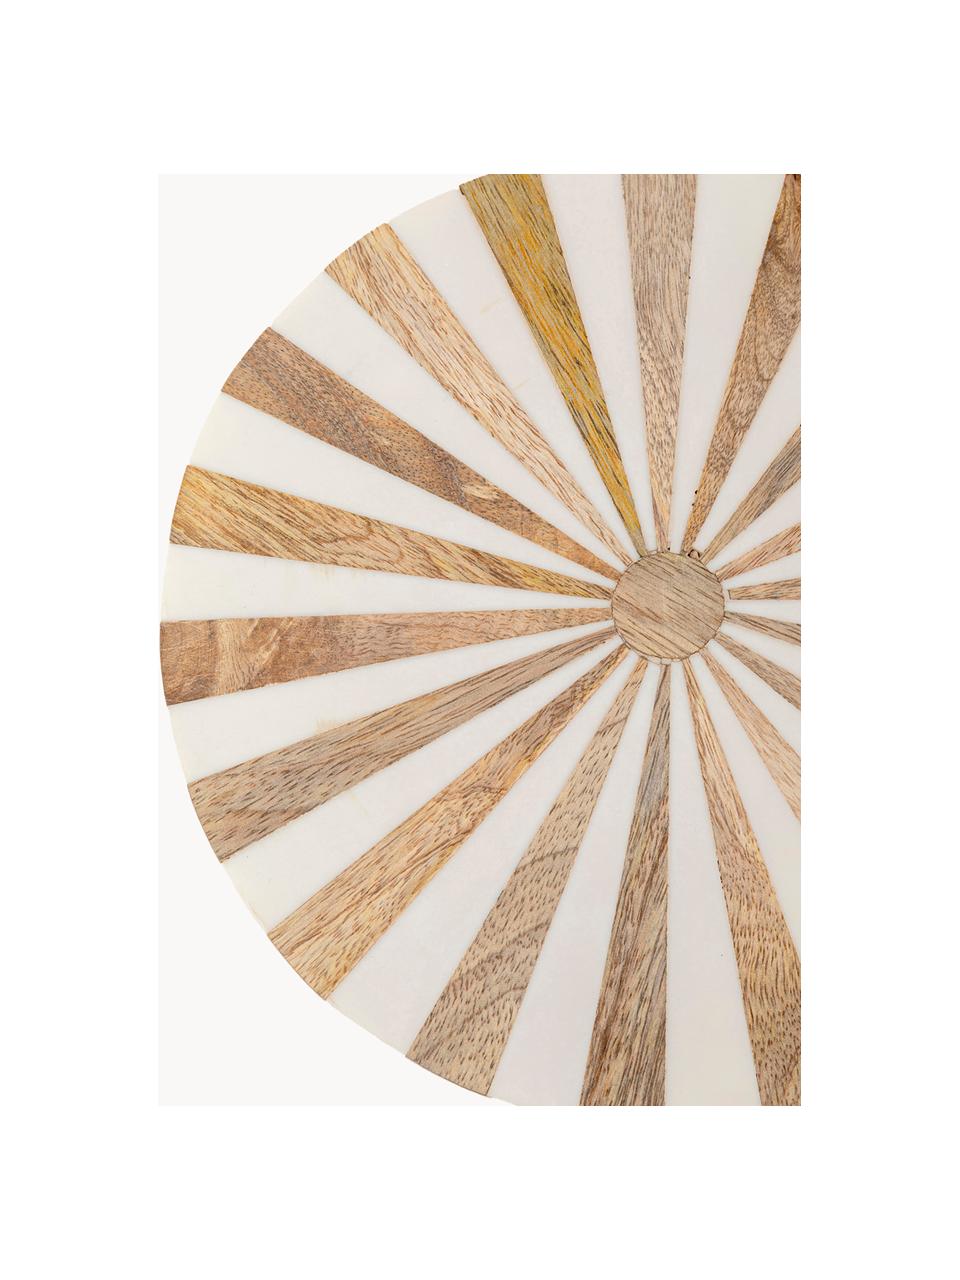 Table d'appoint ronde faite main Domero, Bois, clair laqué, blanc, doré, Ø 25 x haut. 50 cm